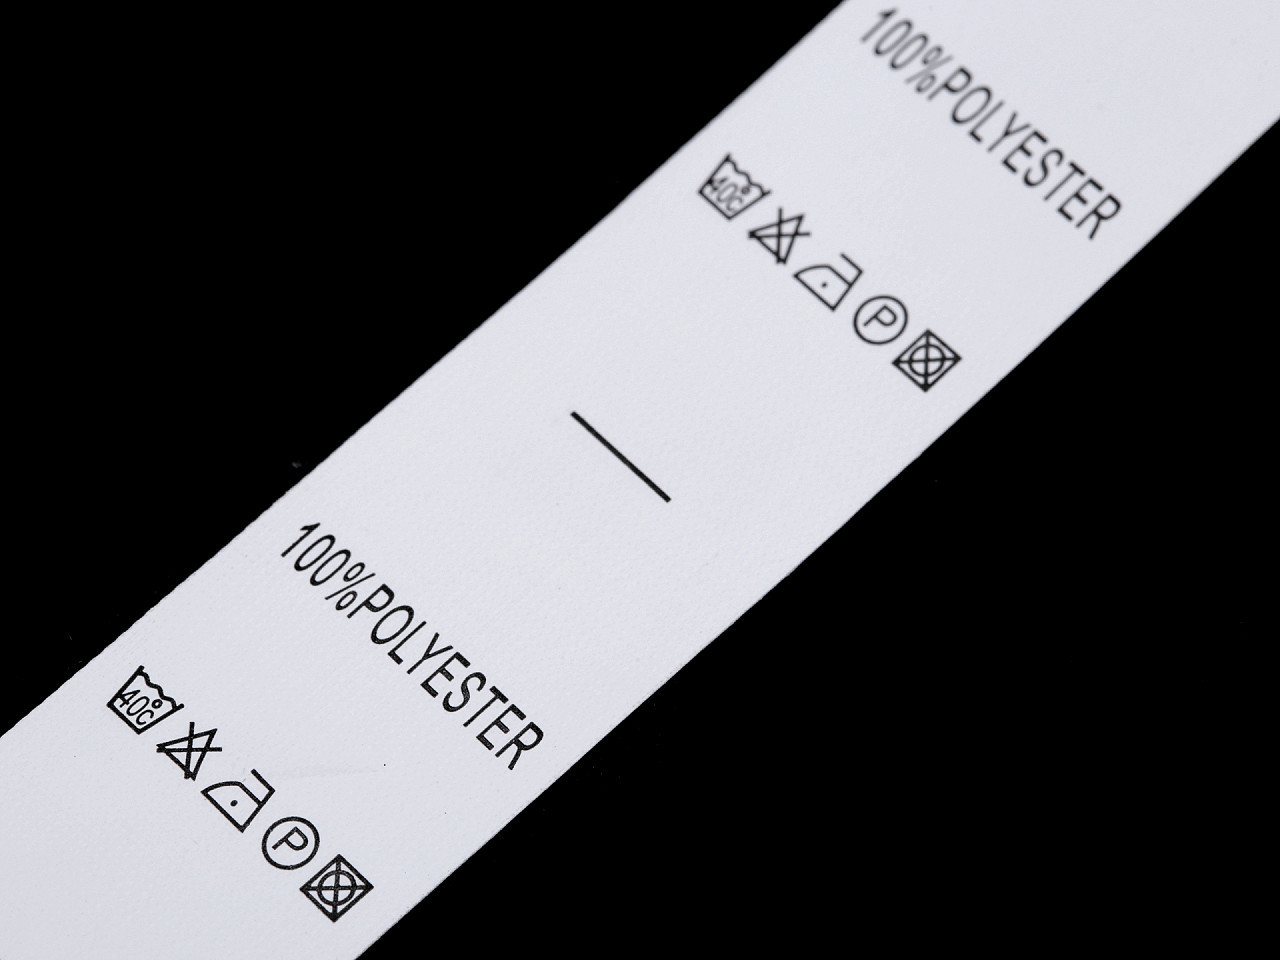 Štítky - složení a prací symboly Varianta: 2 (40°C) bílá polyester, Balení: 1 návin